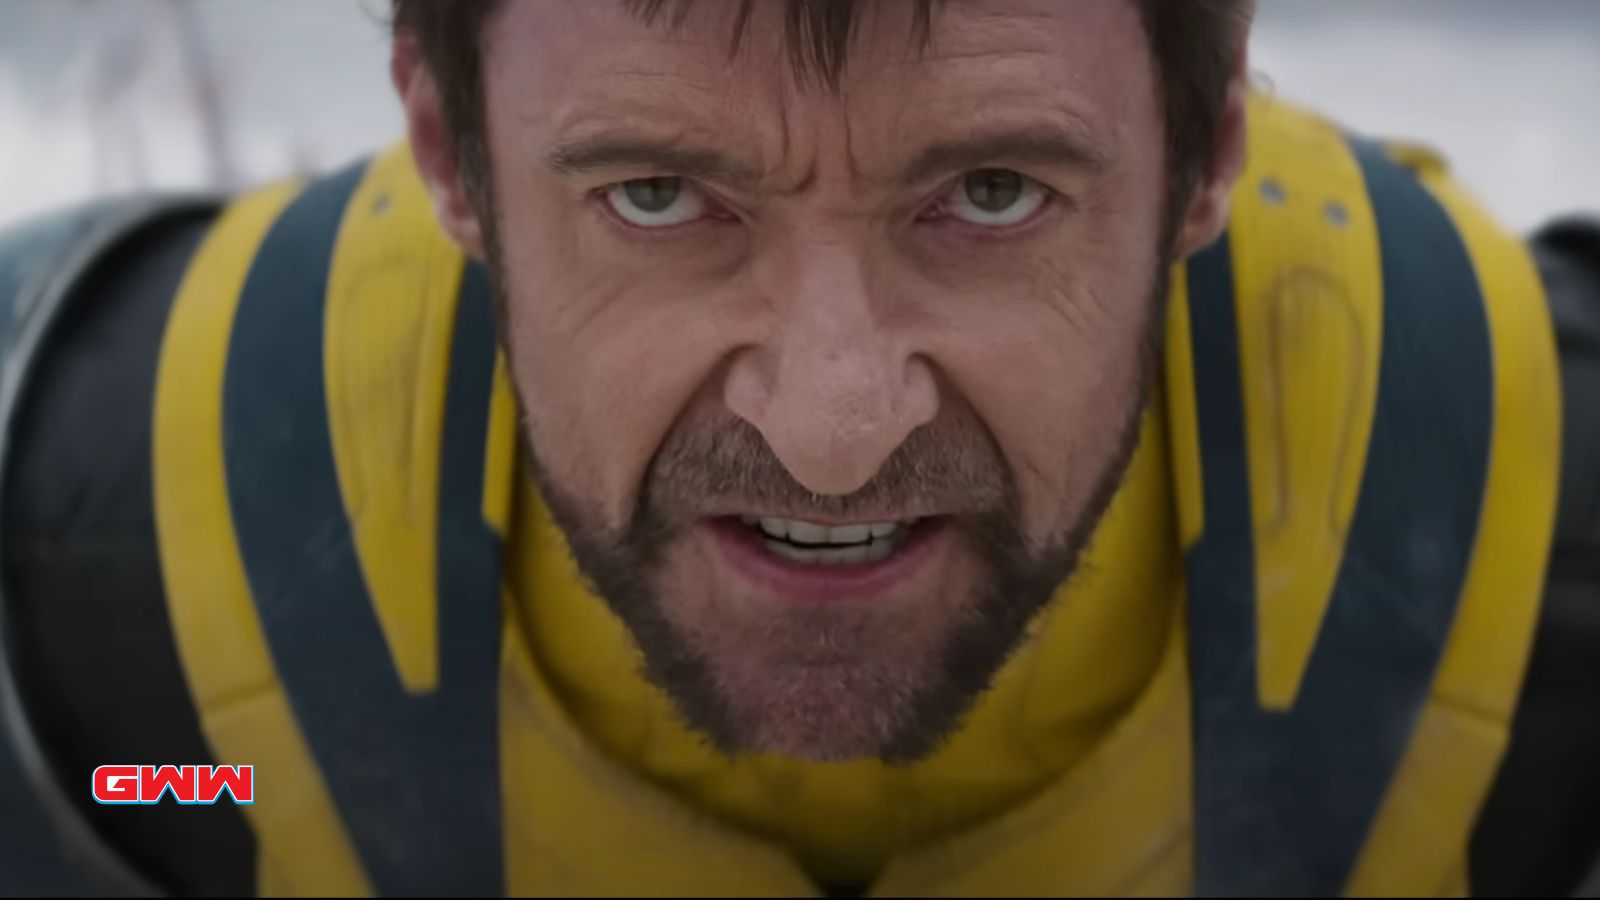 El actor Hugh Jackman, quien interpreta a Wolverine en Deadpool 3